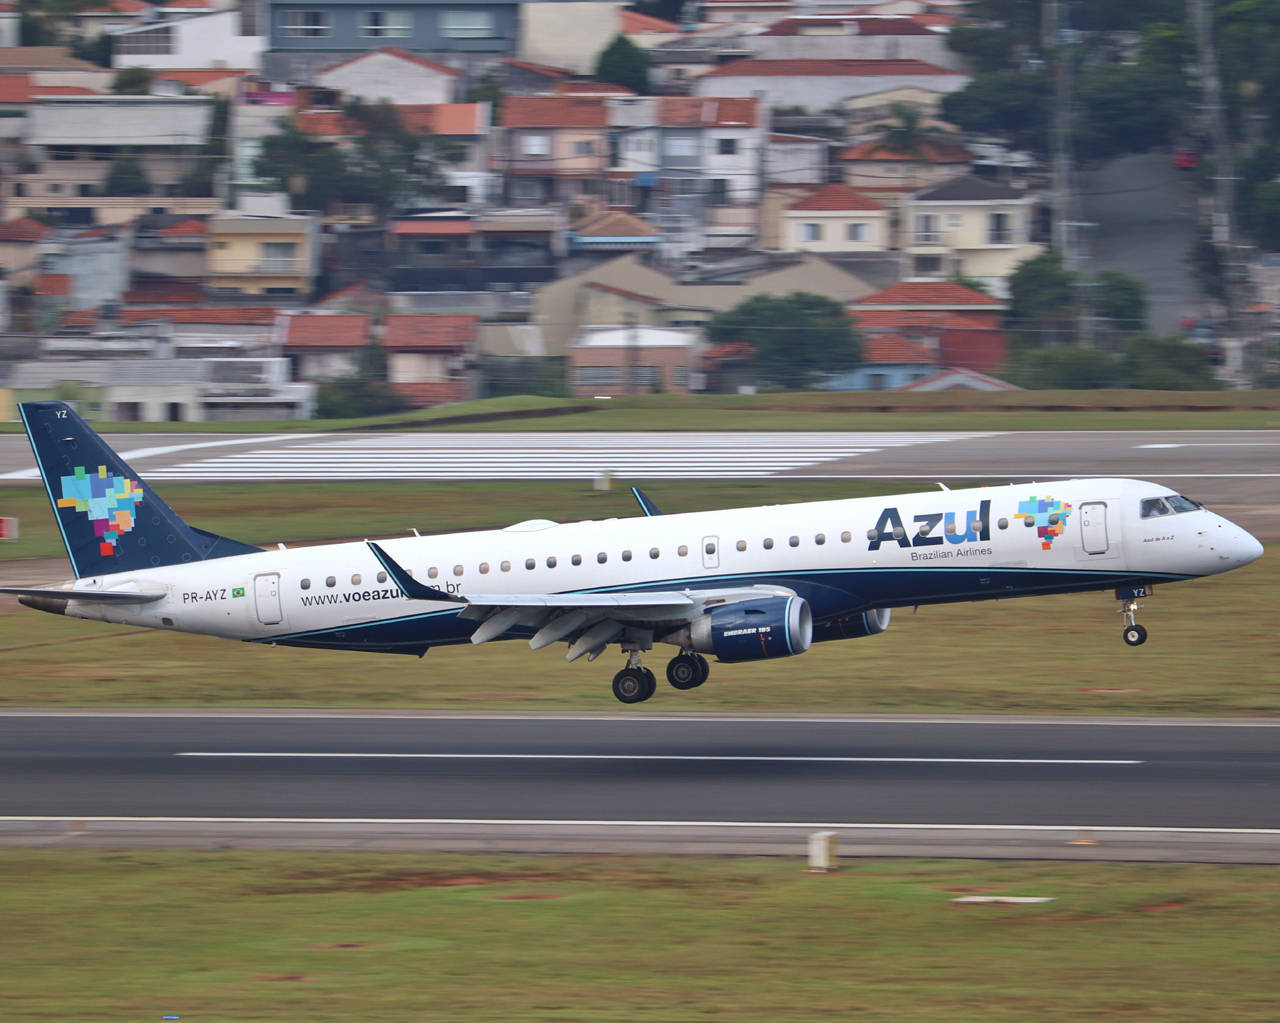 Cuiabá ganha voos diretos da Azul para destinos no Norte e Nordeste -  Prisma - R7 Luiz Fara Monteiro